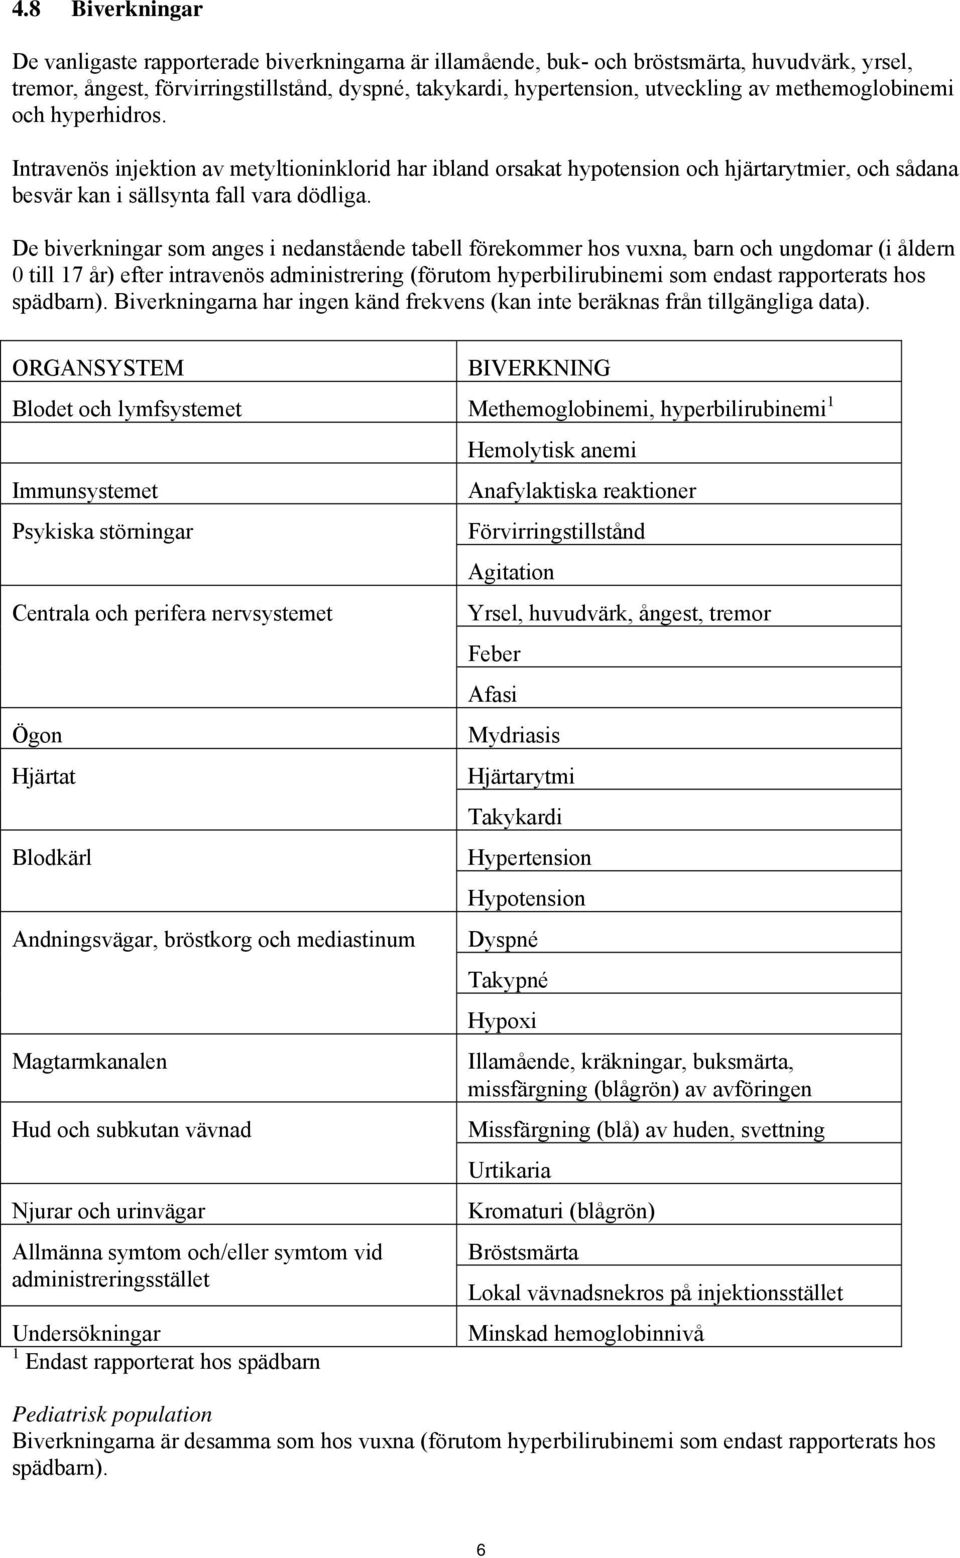 De biverkningar som anges i nedanstående tabell förekommer hos vuxna, barn och ungdomar (i åldern 0 till 17 år) efter intravenös administrering (förutom hyperbilirubinemi som endast rapporterats hos